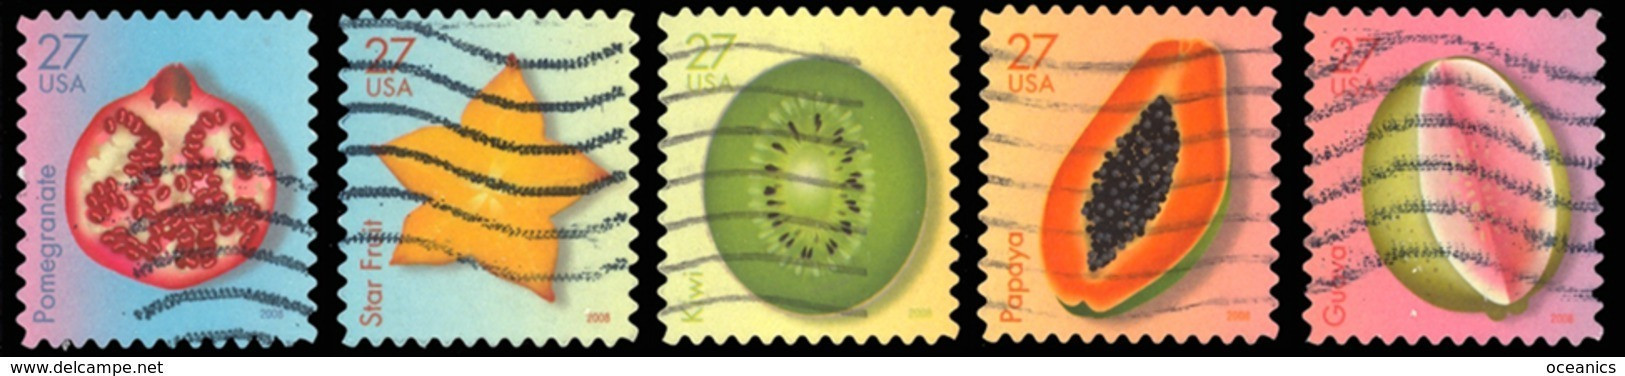 Etats-Unis / United States (Scott No.4253-57 - Fruits Tropicaux / Tropical Fruits) (o) - Oblitérés